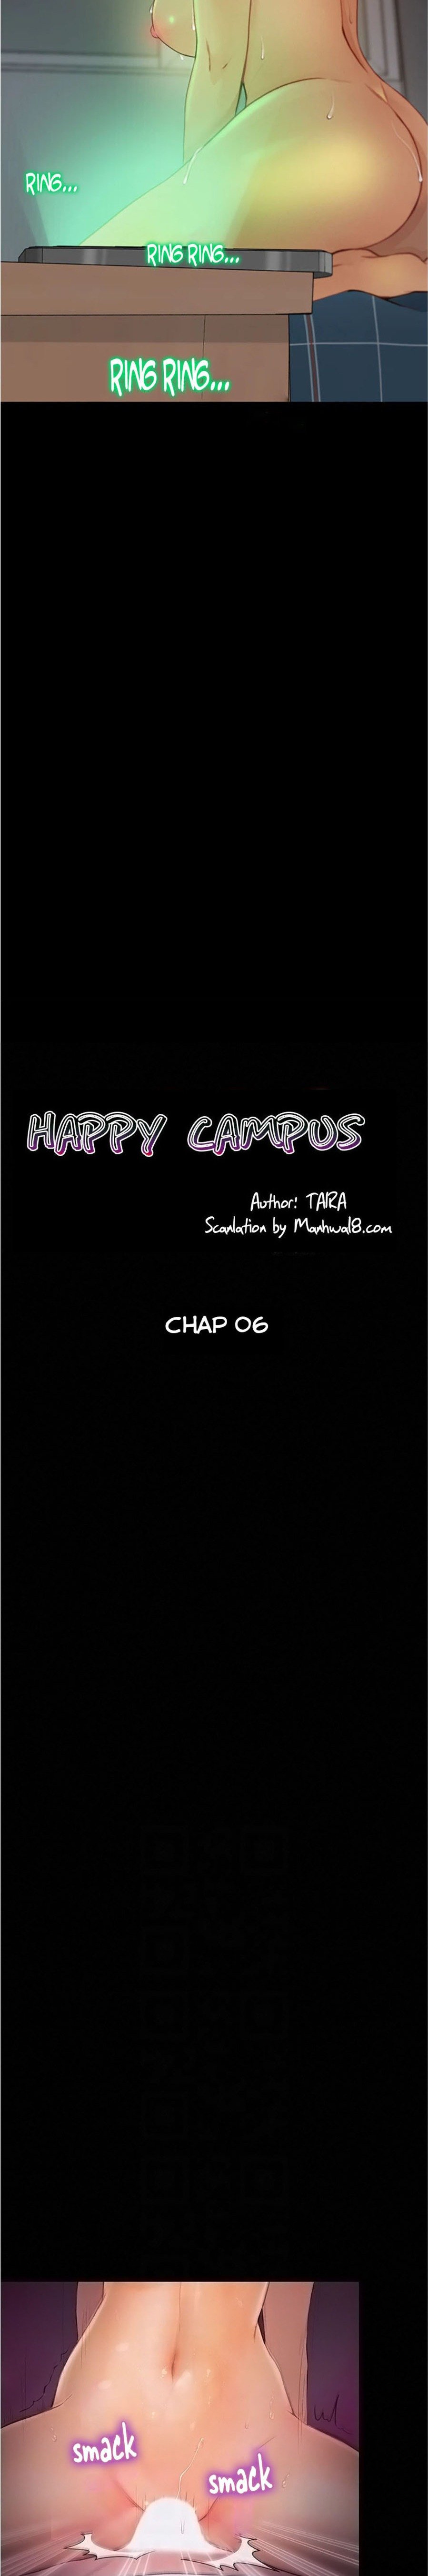 happy-campus-chap-6-1